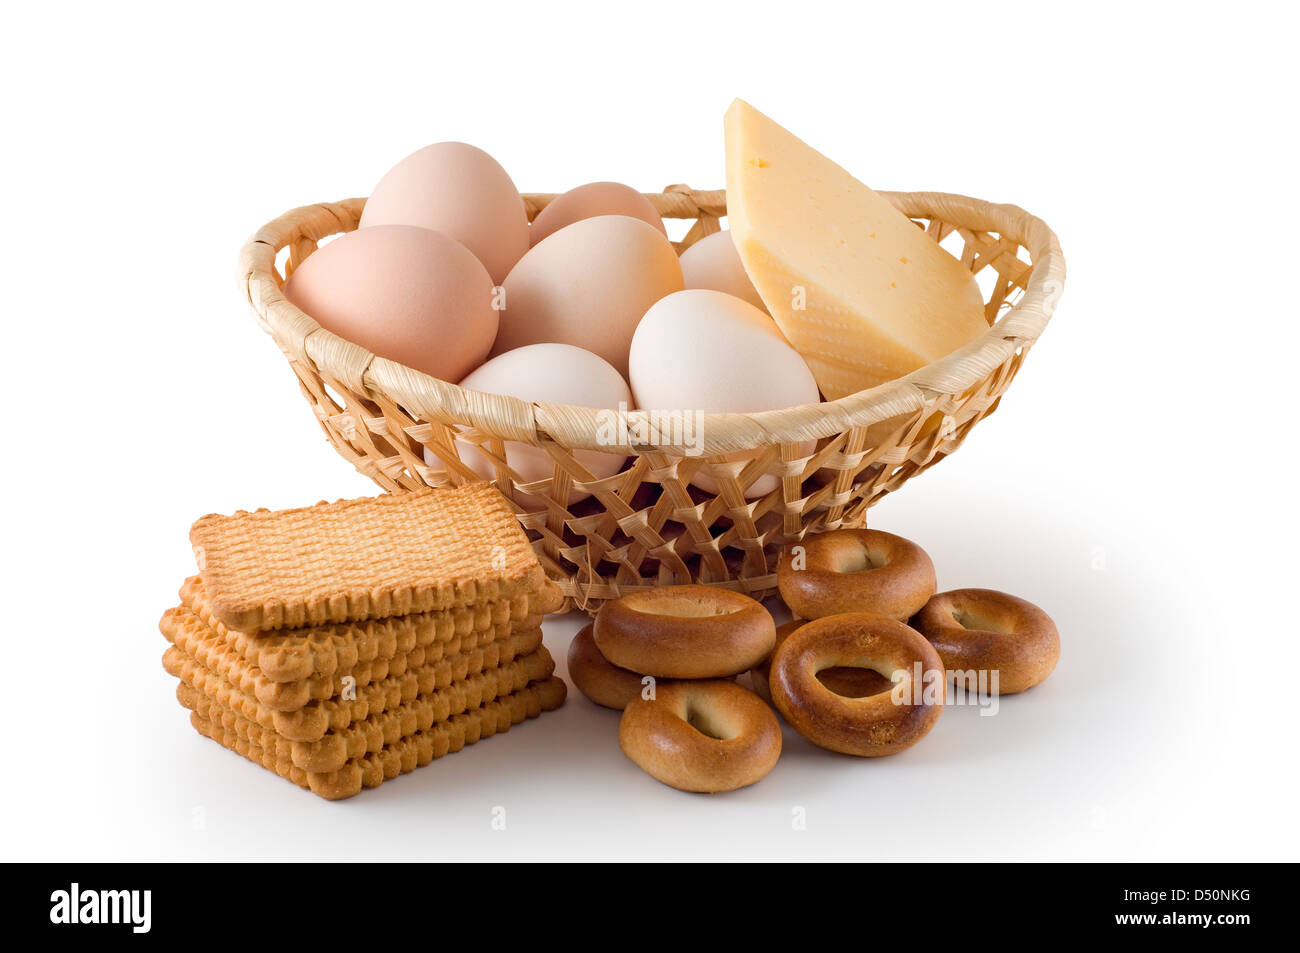 Uova, formaggio, pasticceria sono fotografati sullo sfondo bianco Foto Stock